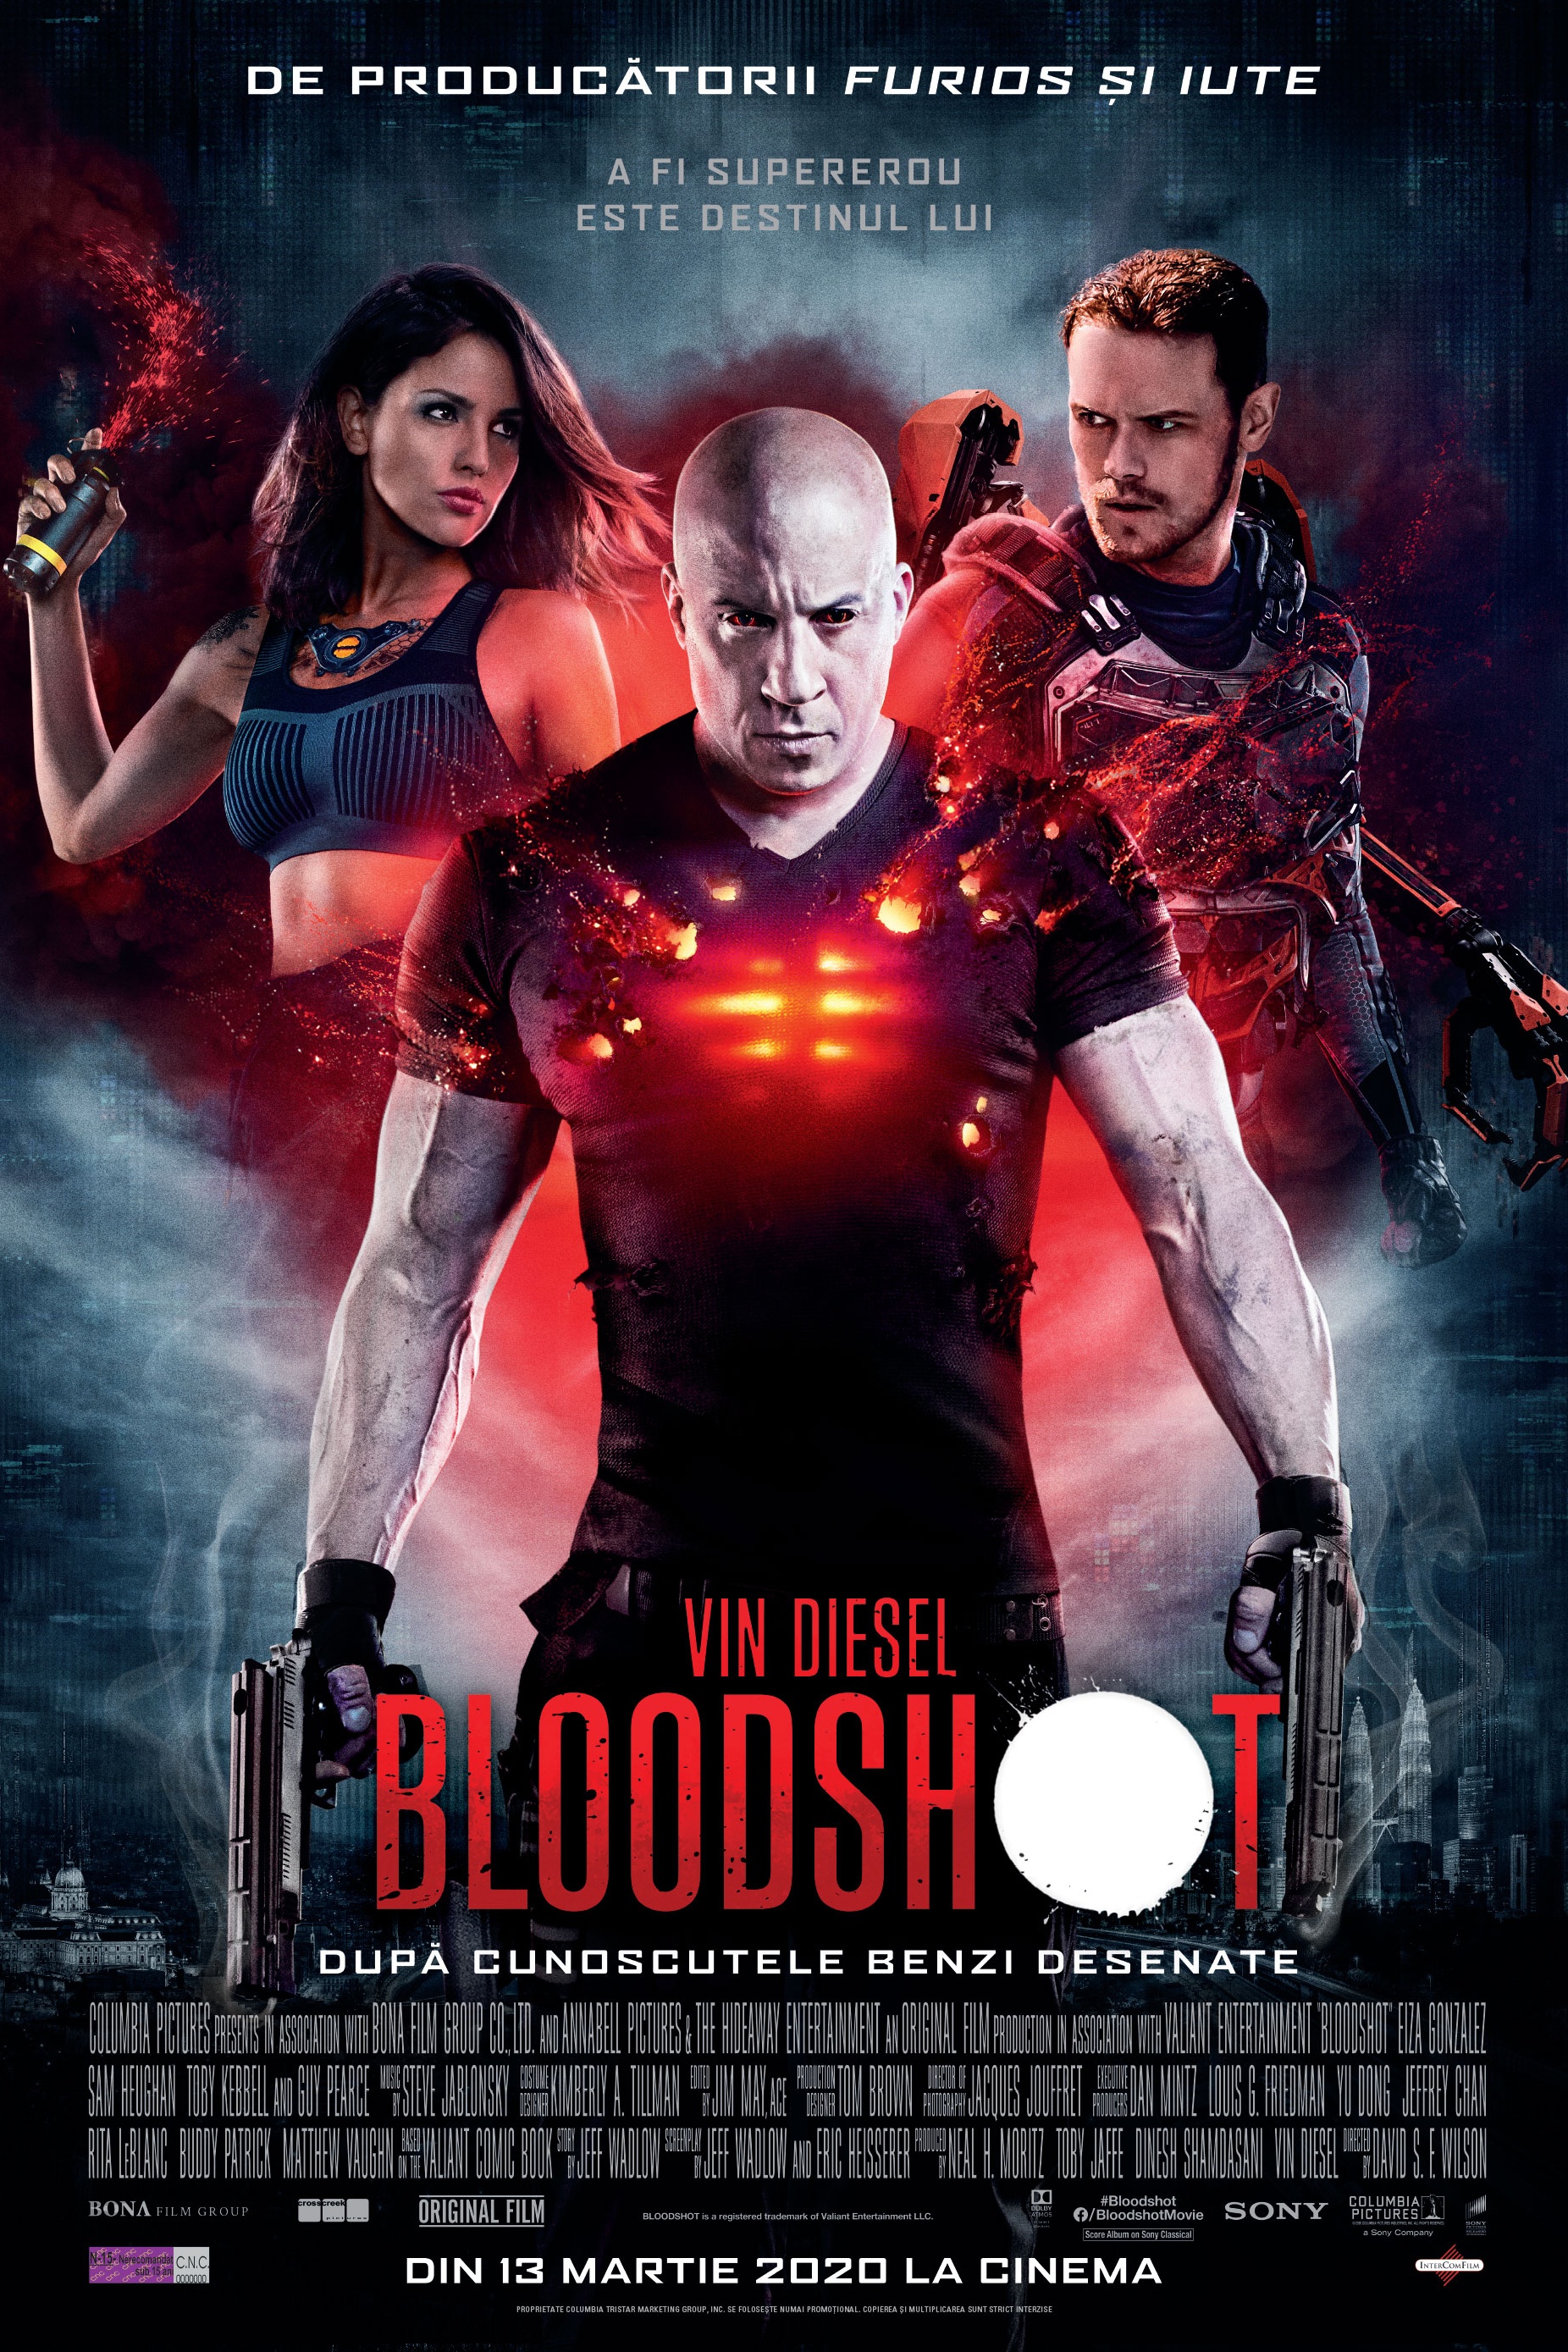 download the bloodshot movie